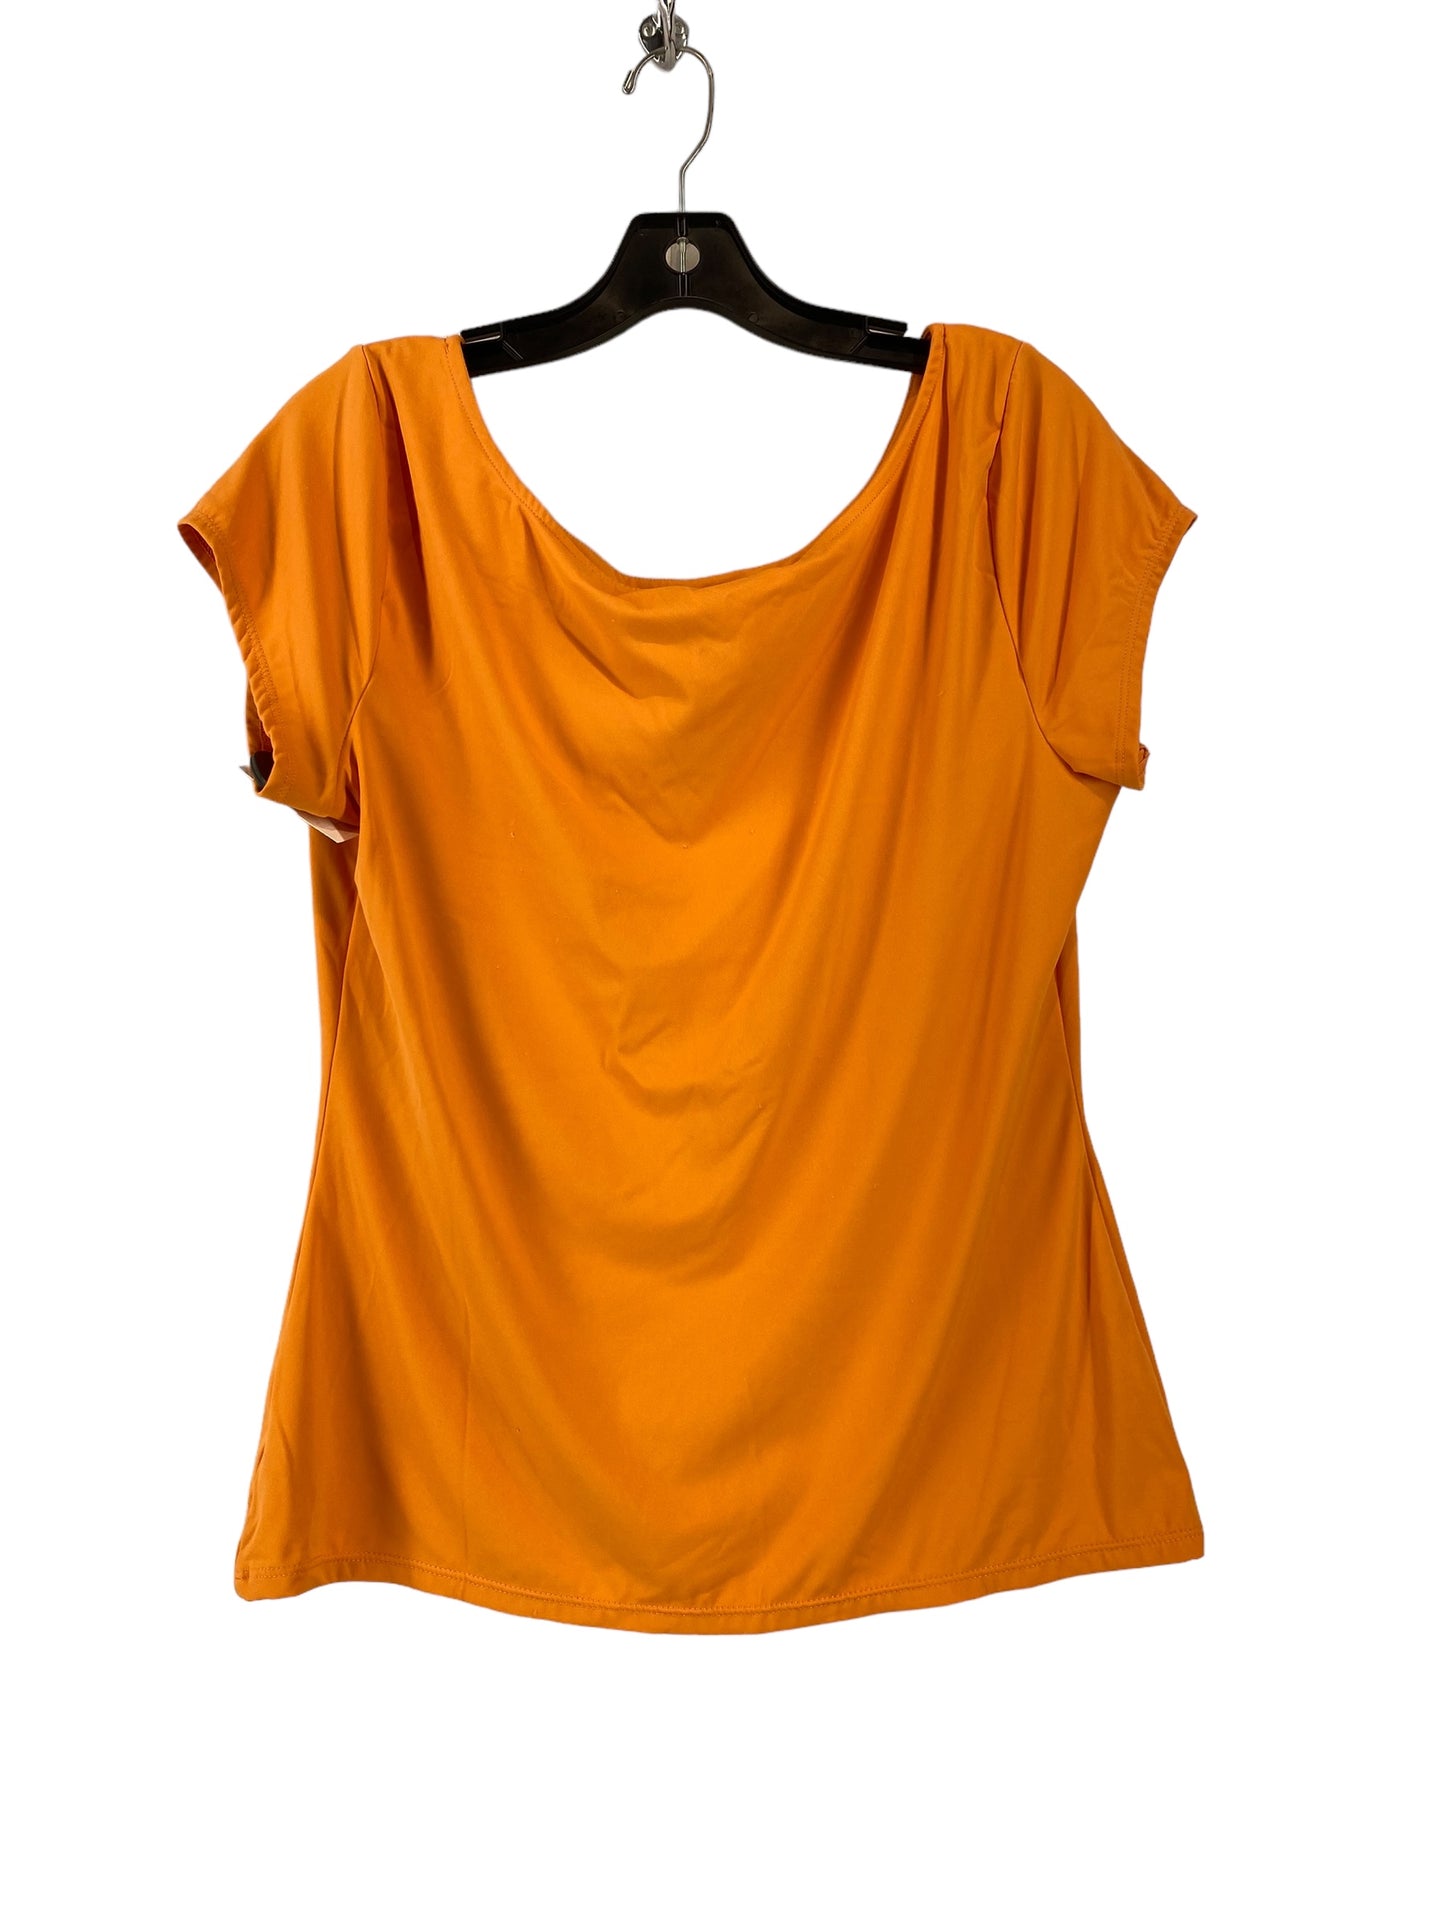 Orange Top Short Sleeve Worthington, Size L